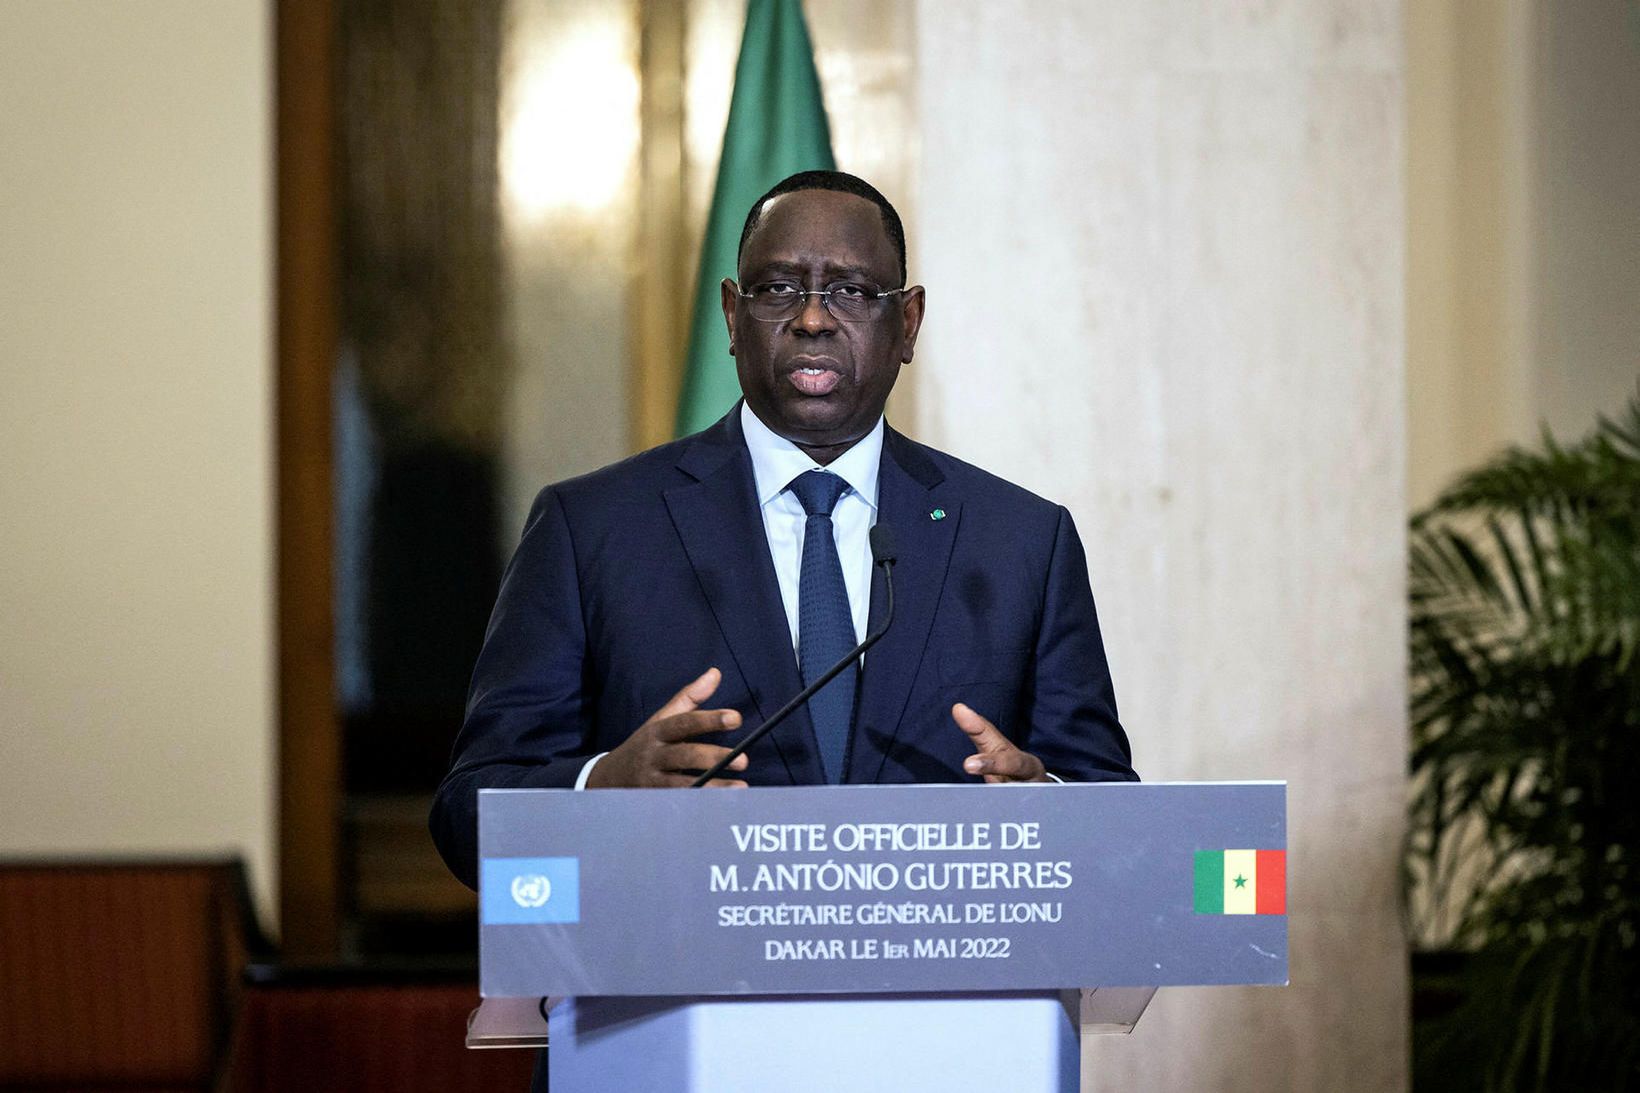 Macky Sall, forseti Senegal, hefur rekið heilbrigðisráðherra sinn.